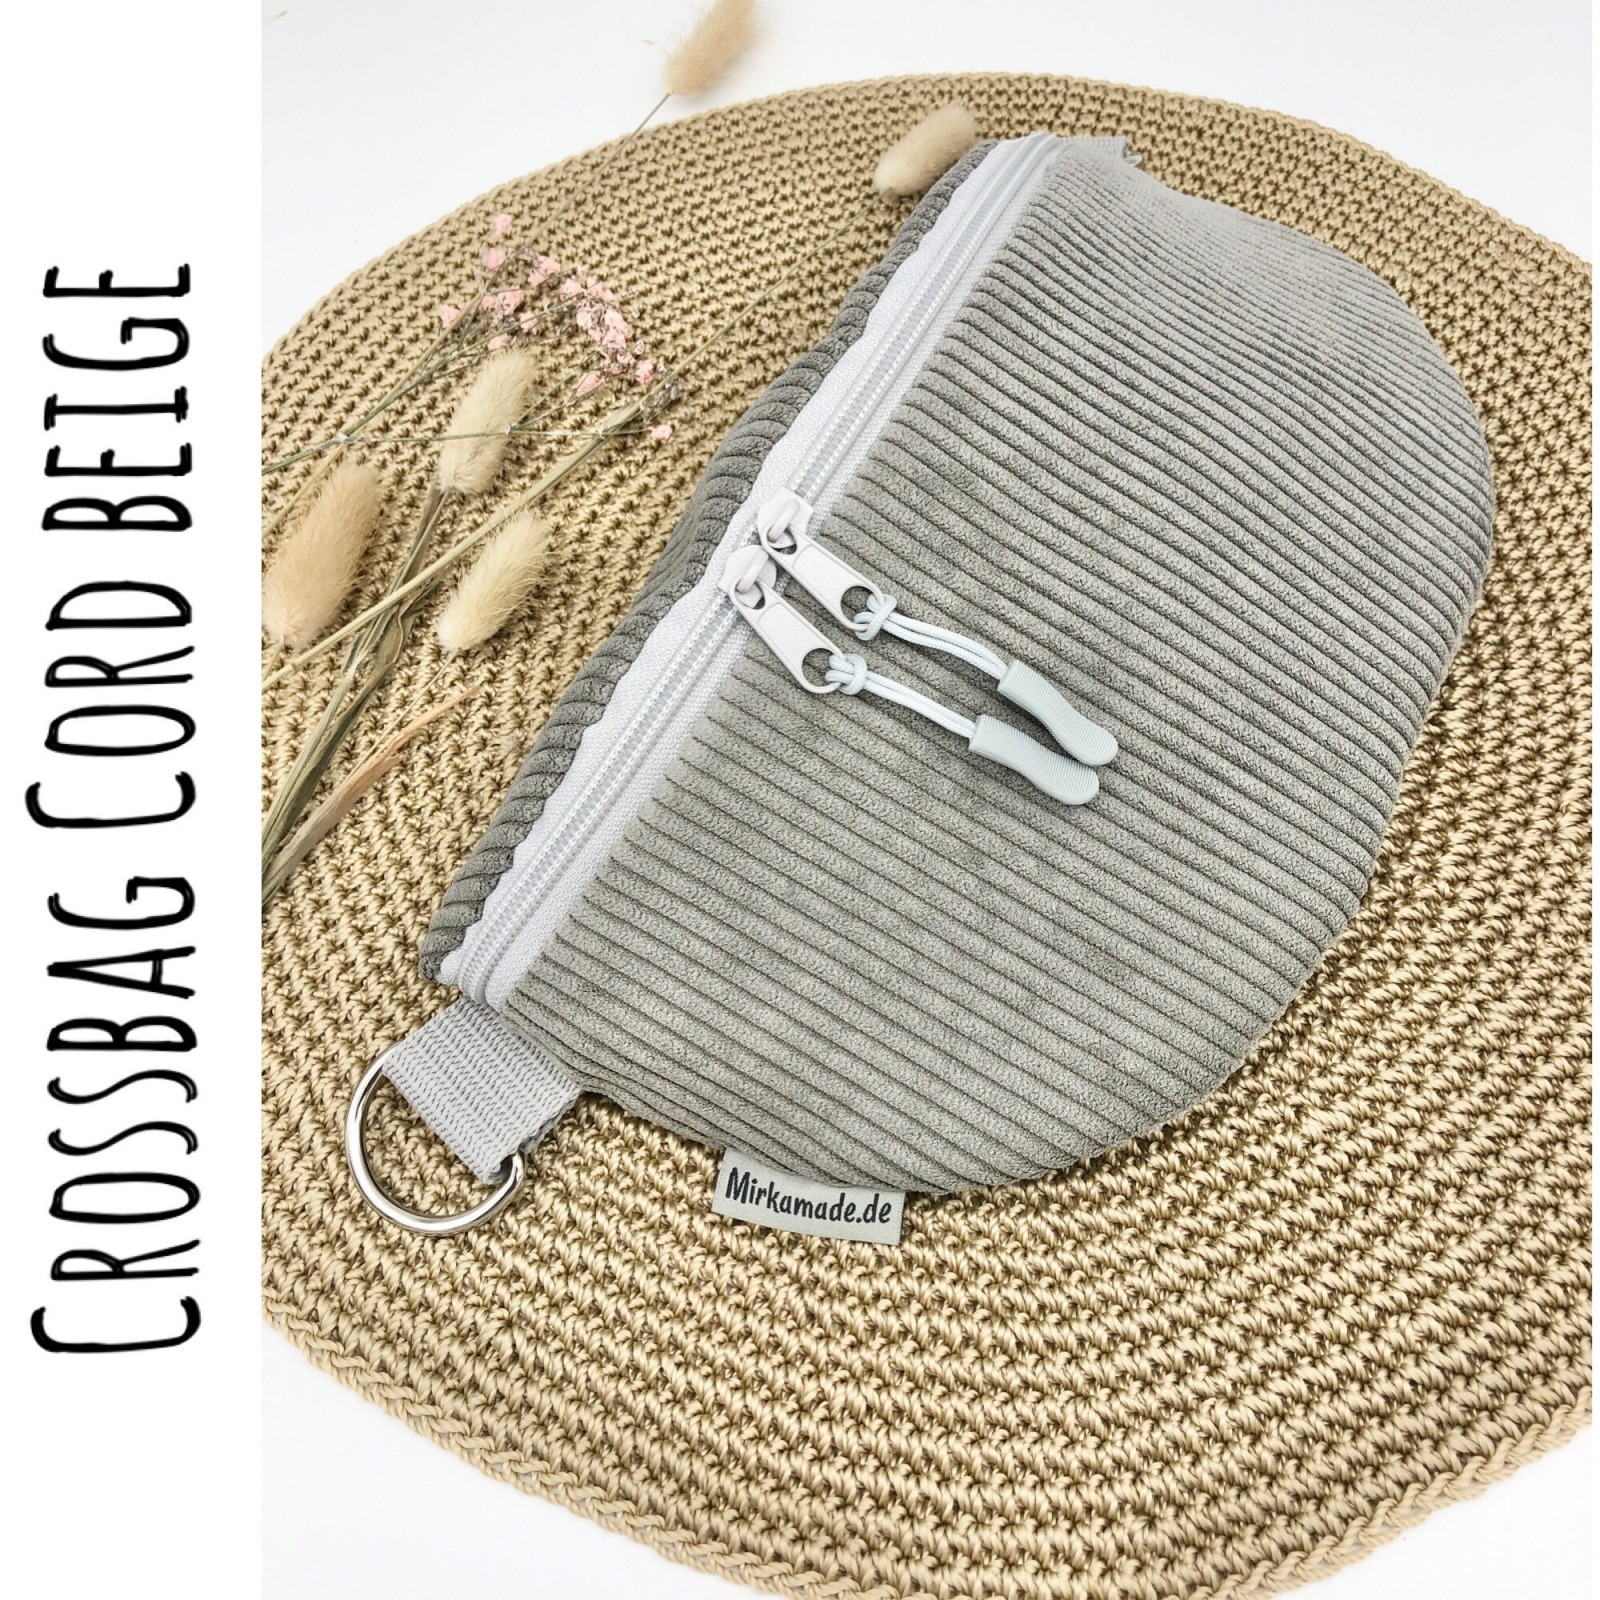 Bauchtasche Crossbag Cord graubeige mit Leogurt in grau Tasche Cord grau beige Hipbag leicht und